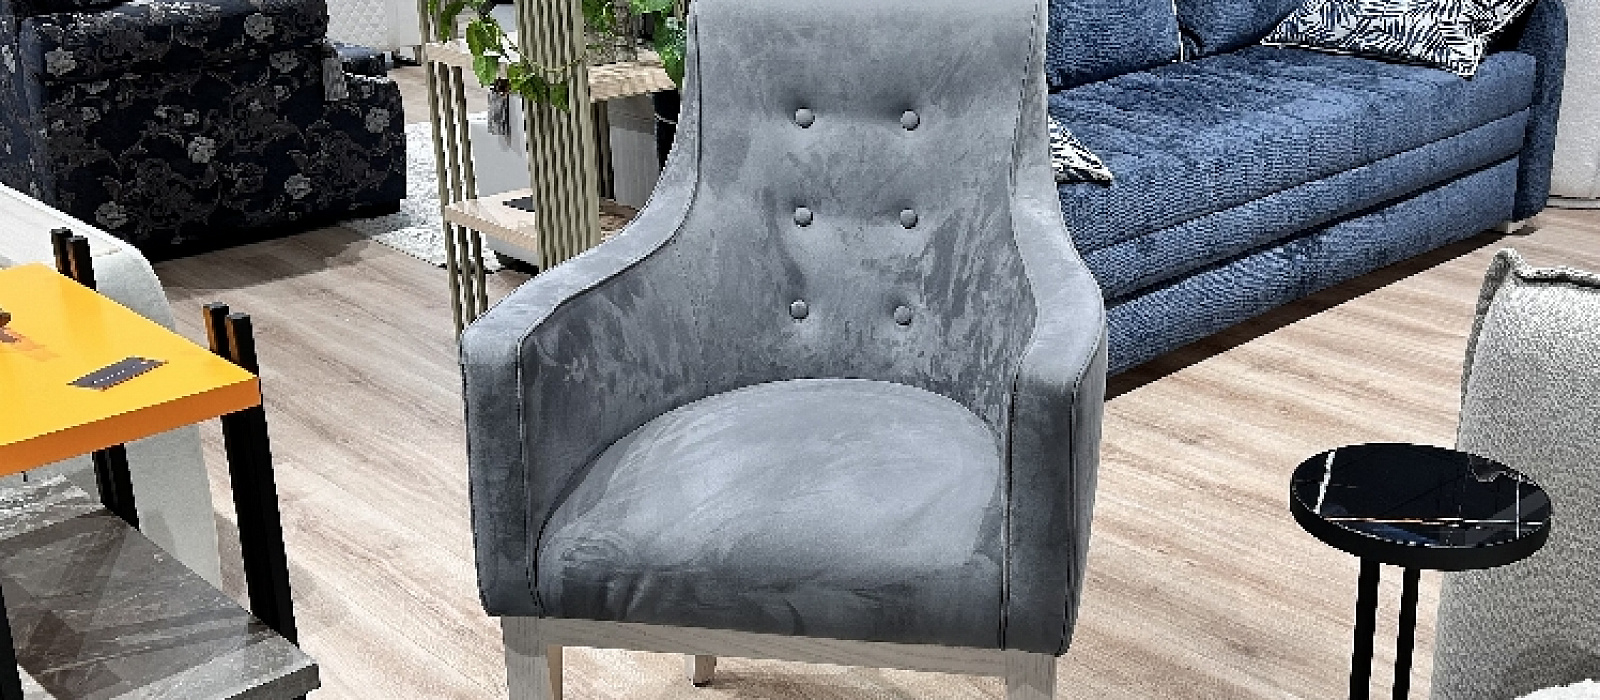 Купить кресло «Модест кресло» в интернет магазине Anderssen - изображение 1